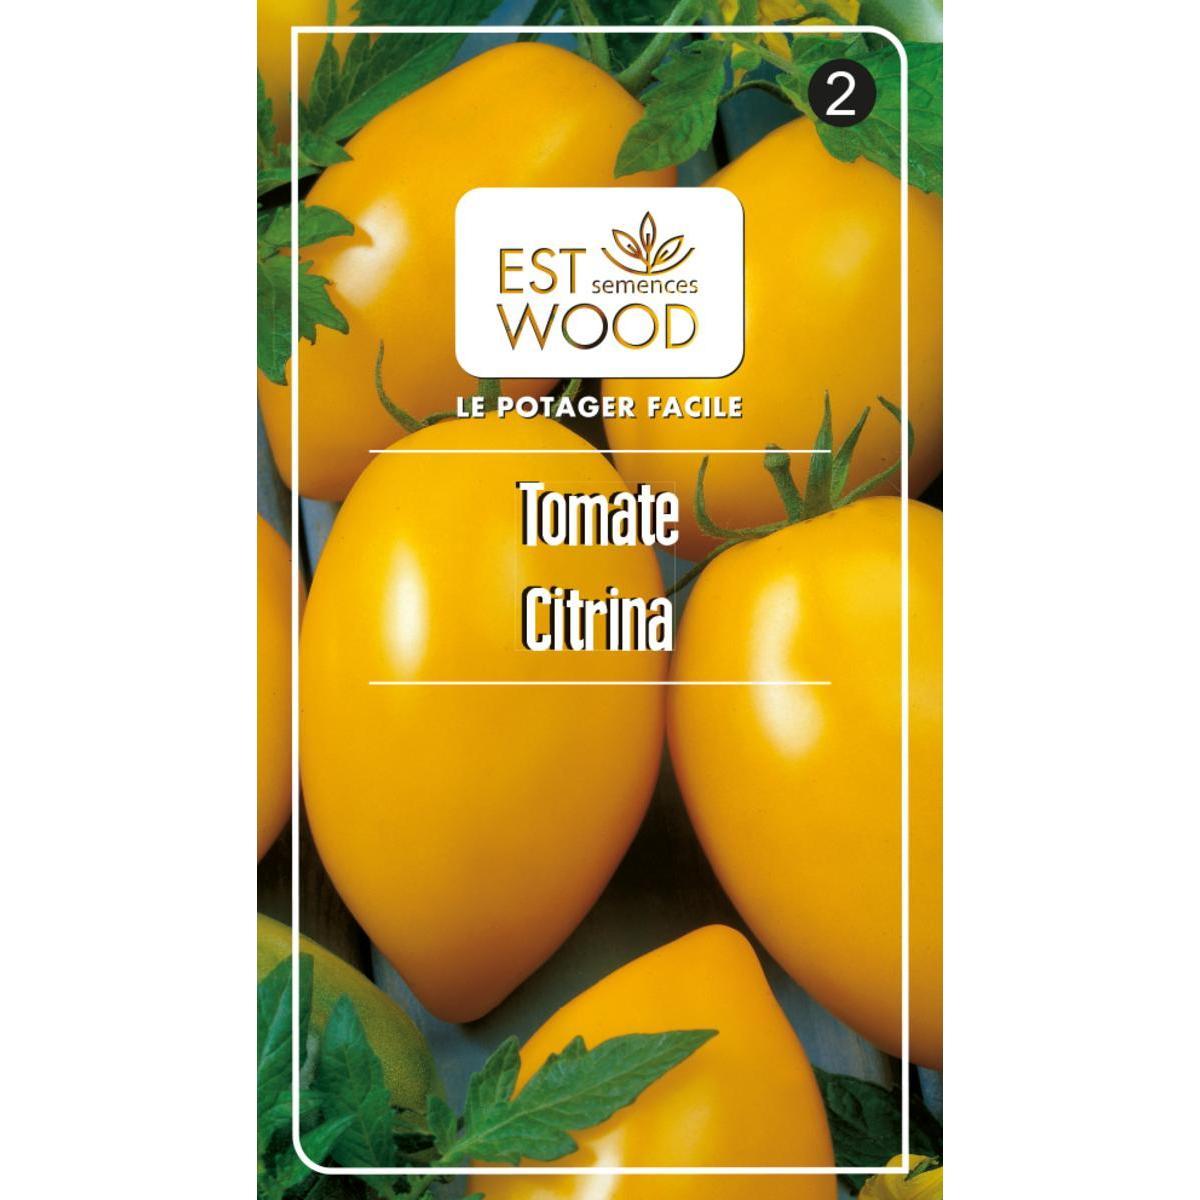 Semence végétale - 1 sachet de 14 x 8 cm - Tomate citrine